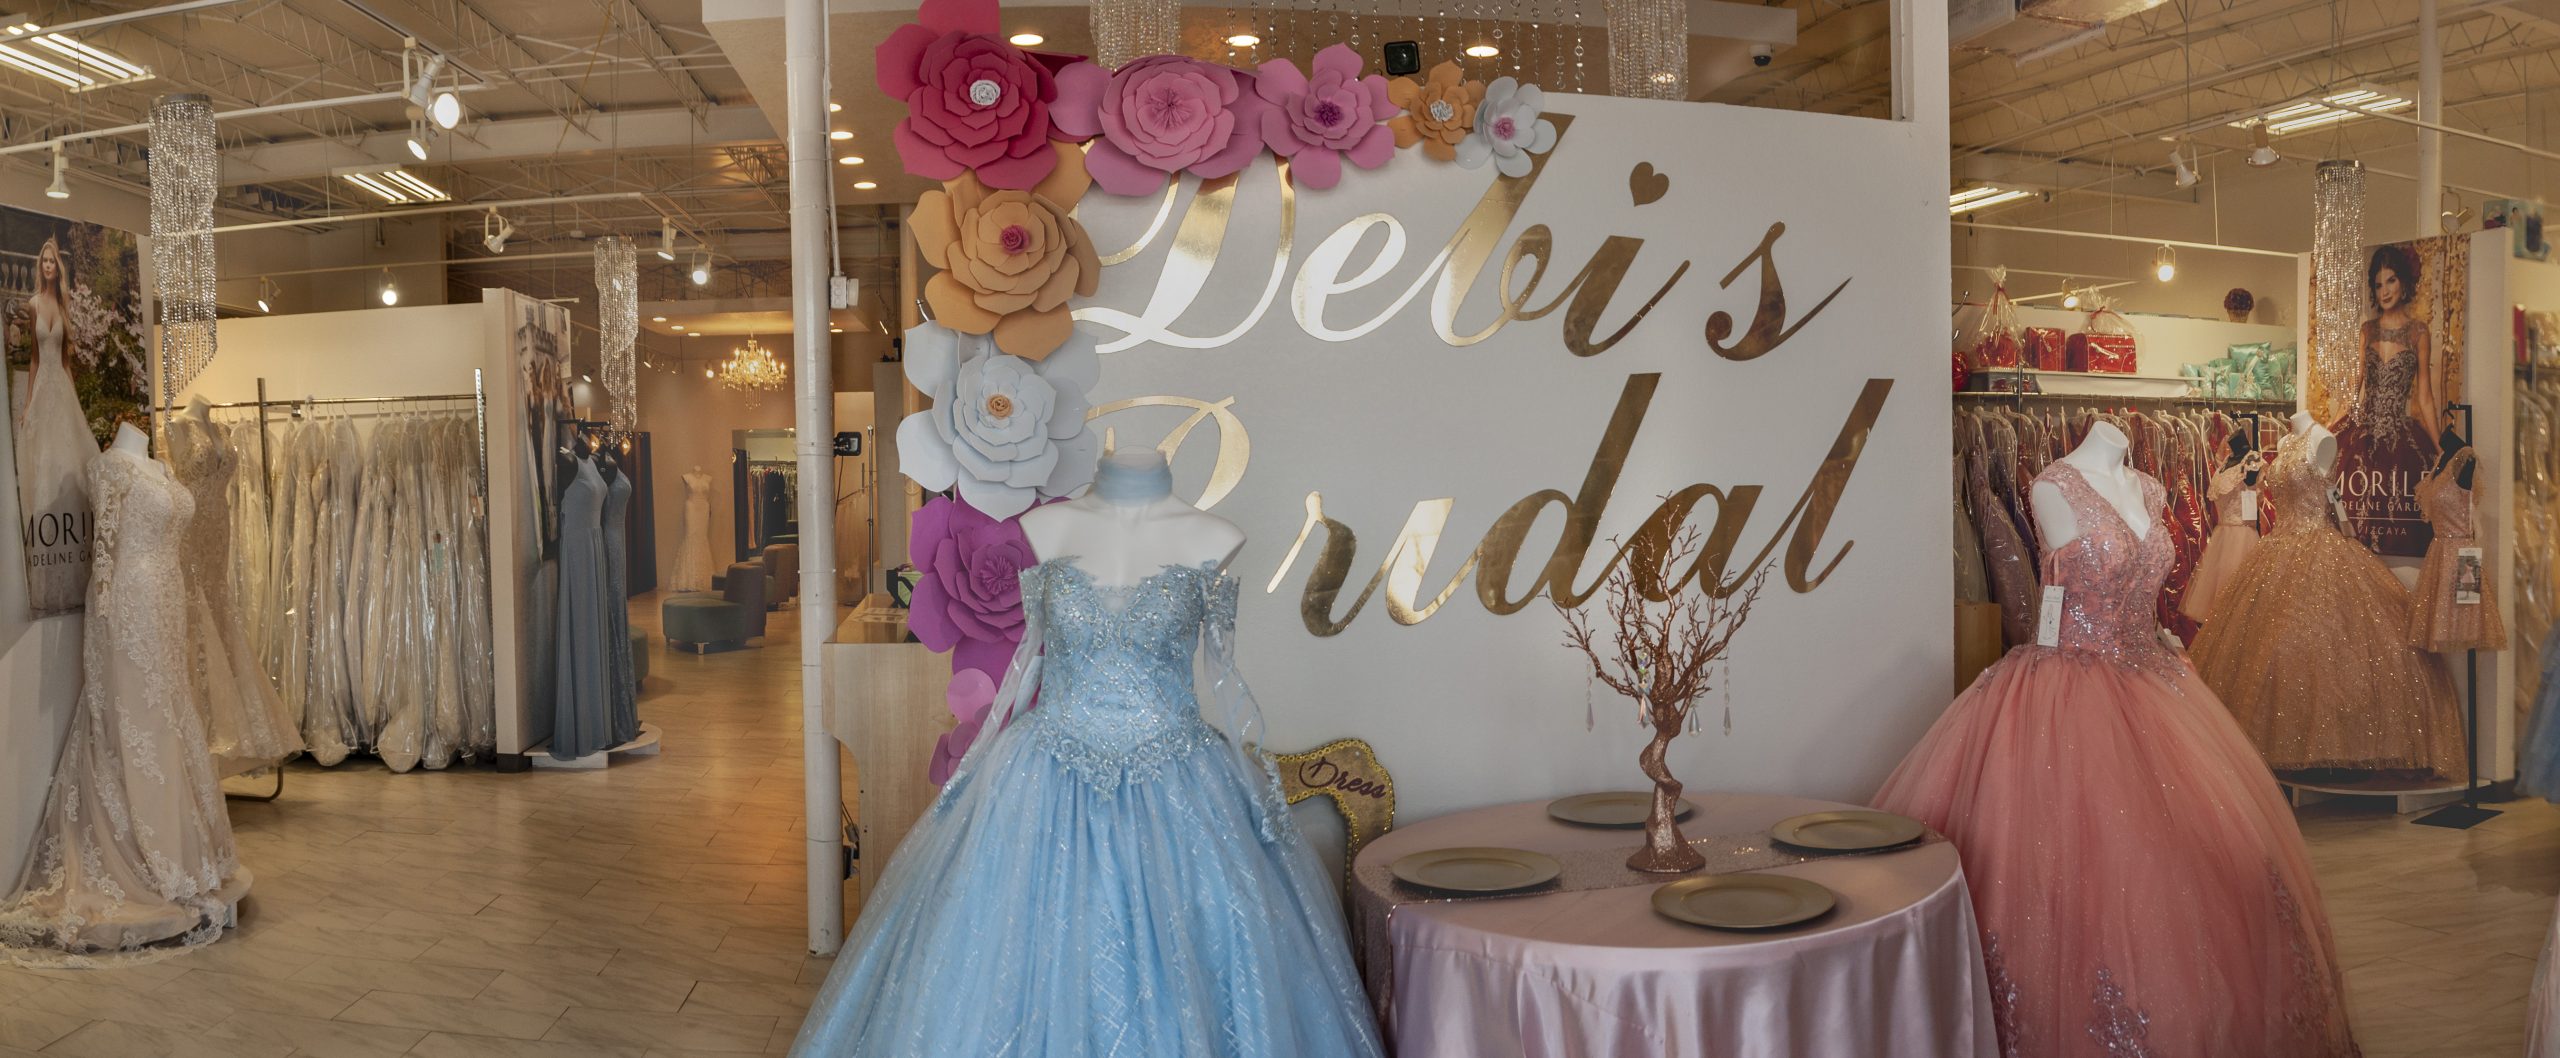 Debi's Bridal Shop-San Antonio Weddings